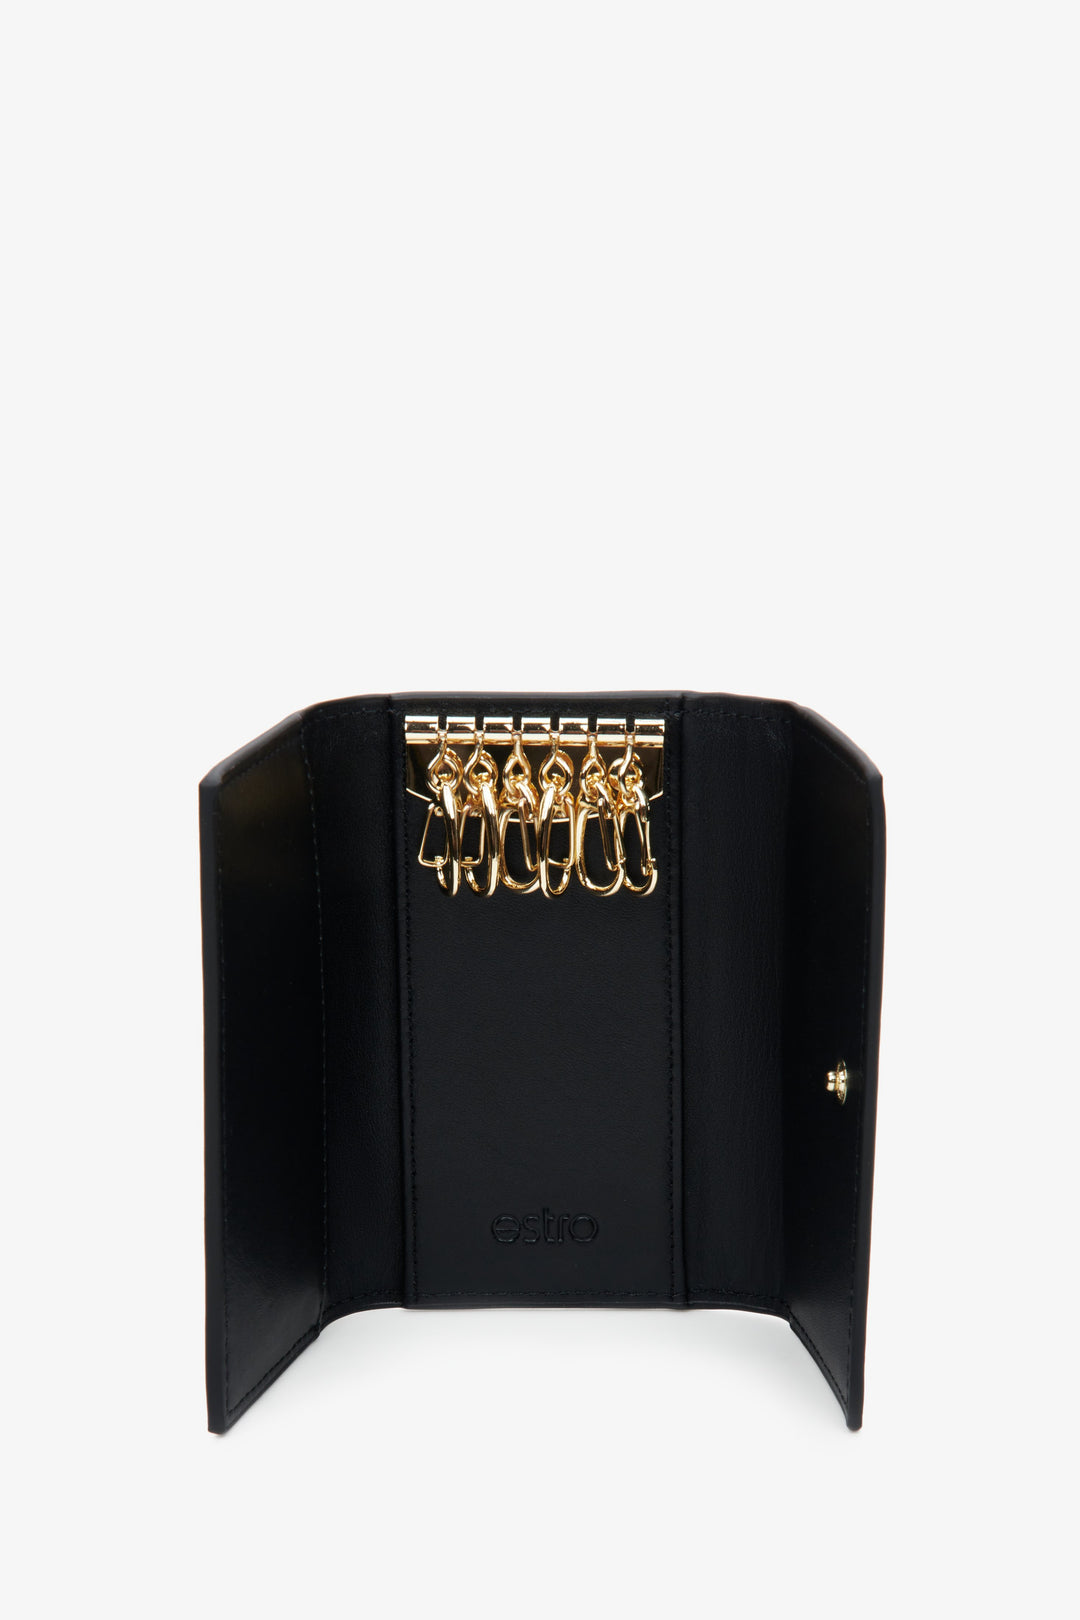 Estro black genuine leather key case - close-up of the interior.